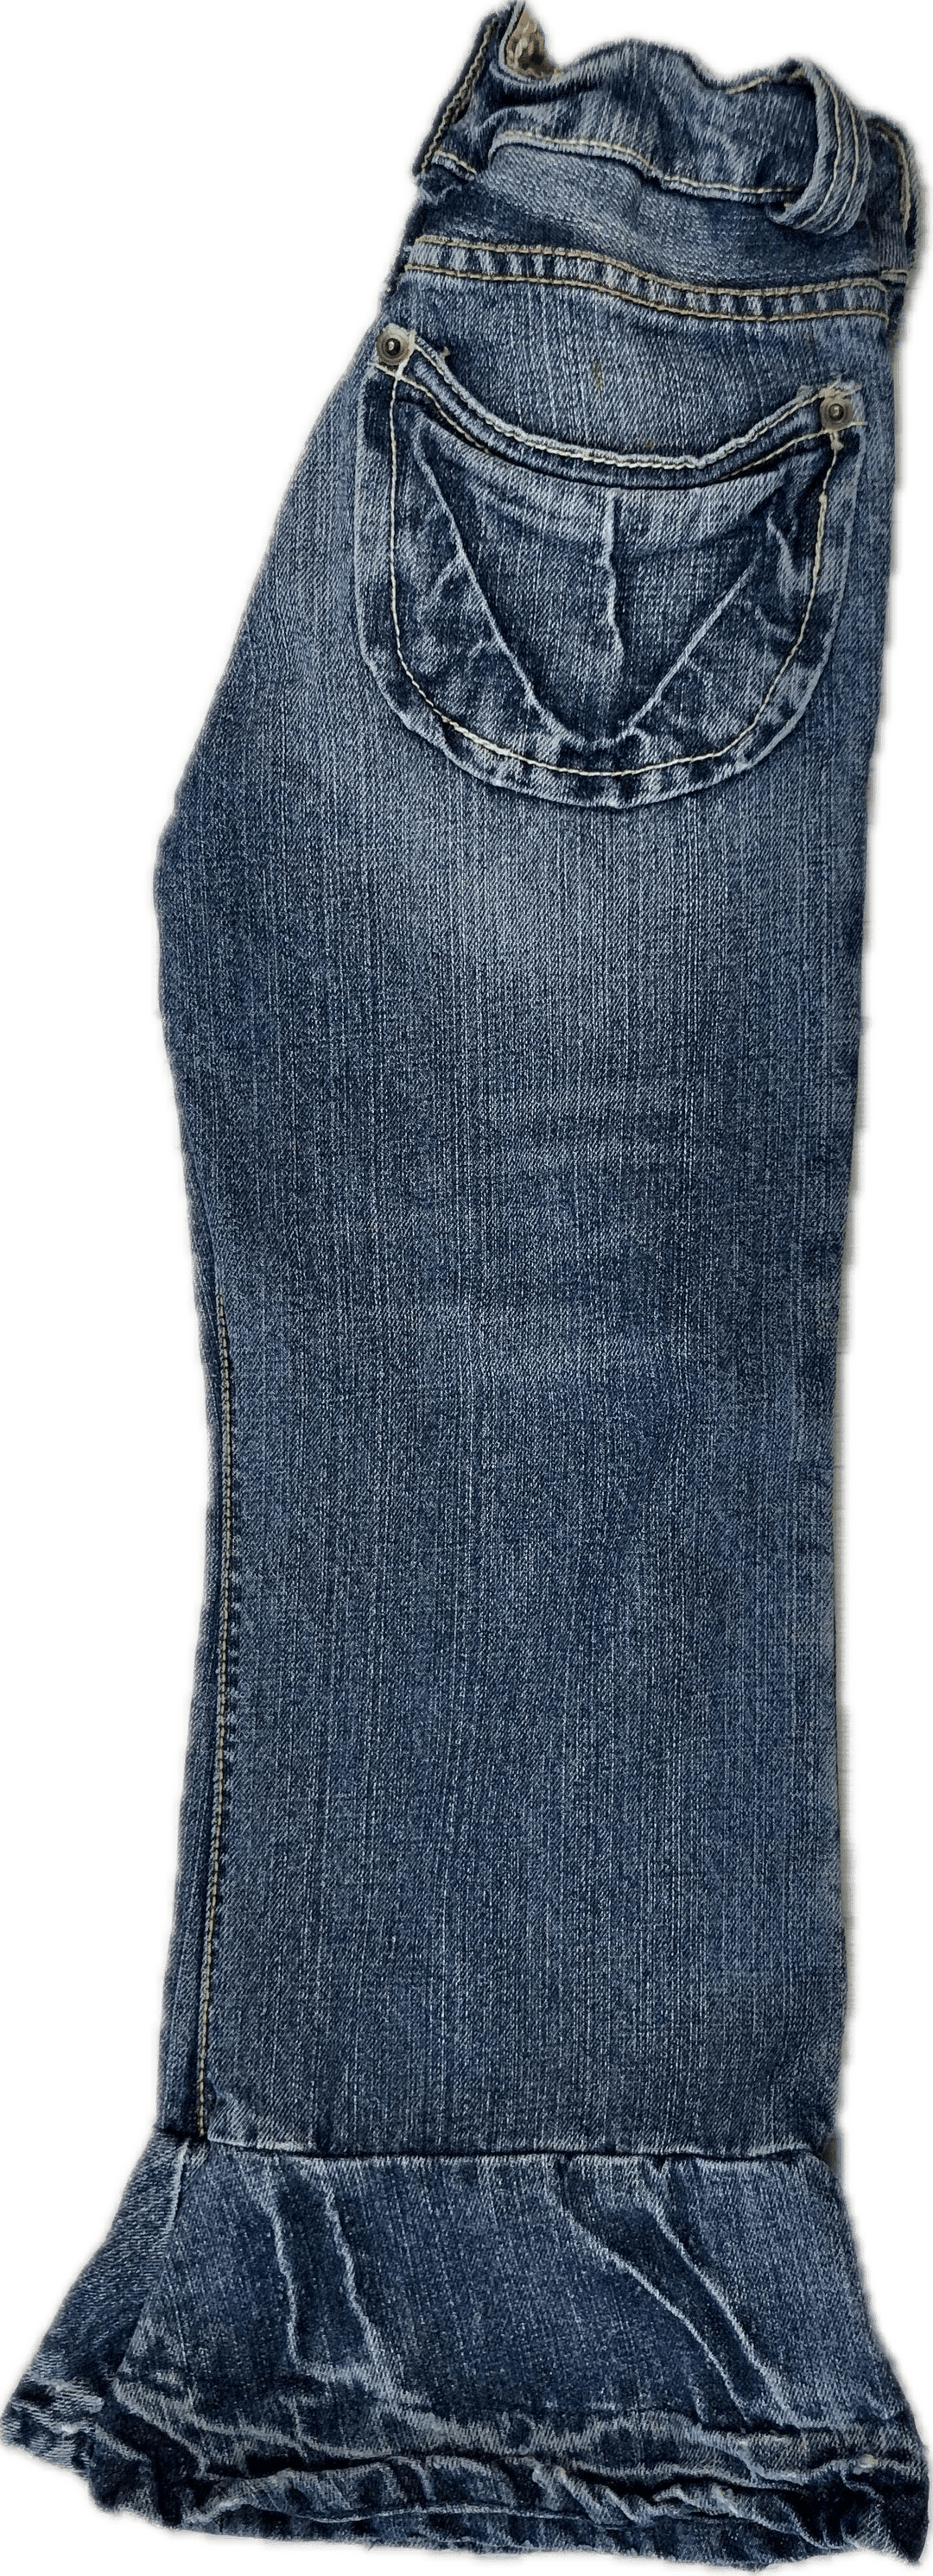 Trelise Cooper Kids Denim Frilled Hem Jeans - Size 7 - Jean Pool